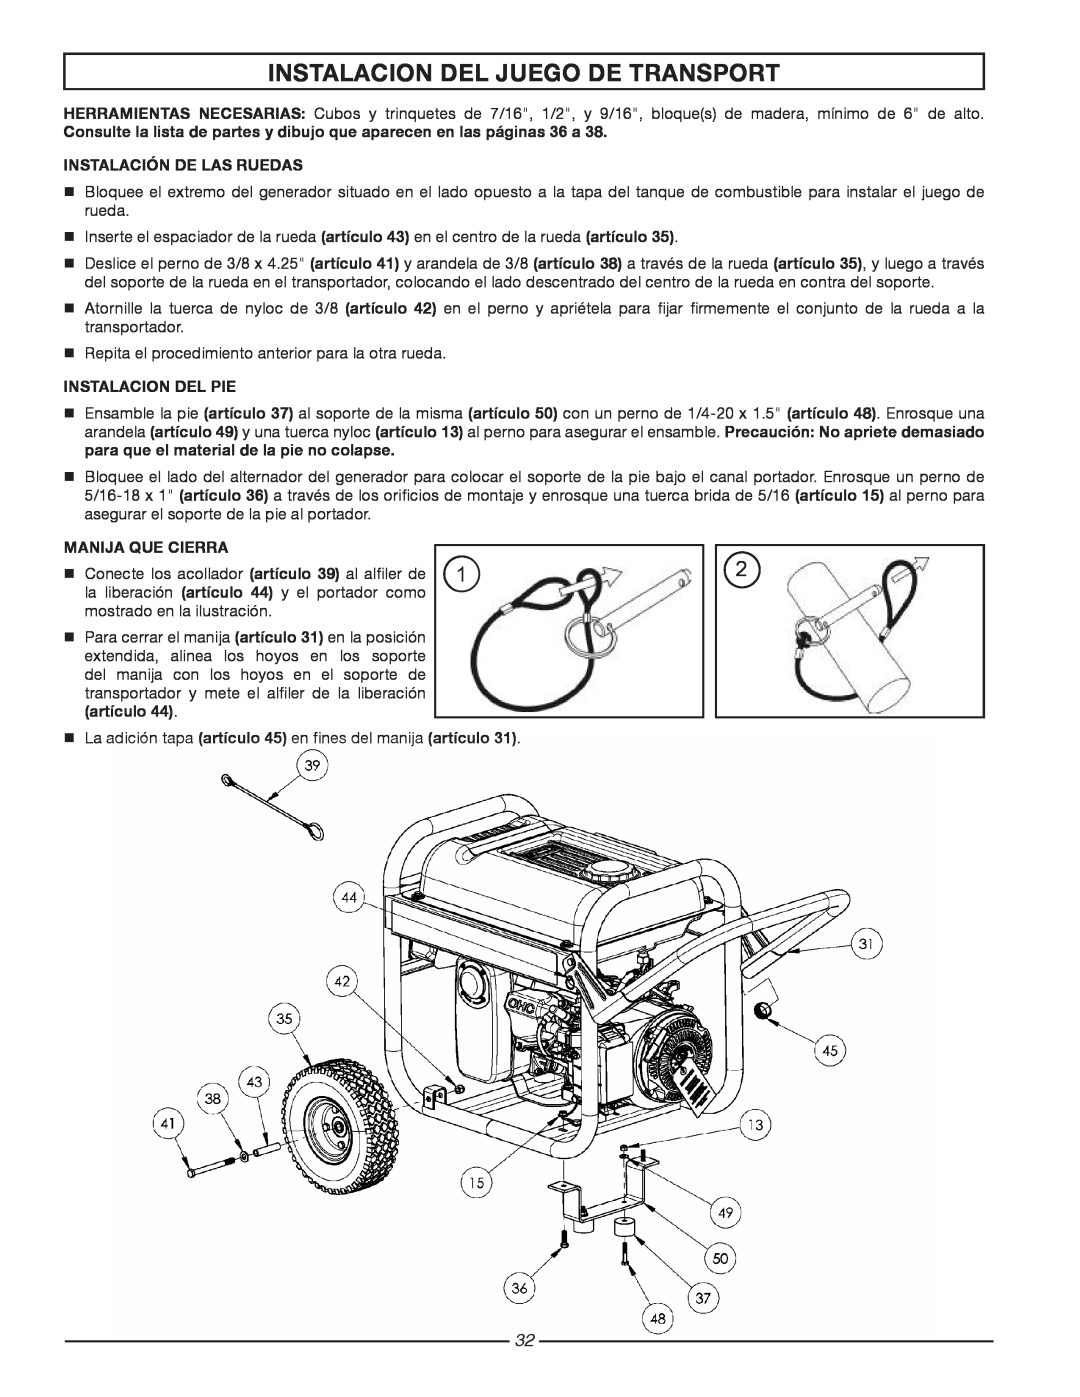 Homelite HG3510 Instalacion Del Juego De Transport, Consulte la lista de partes y dibujo que aparecen en las páginas 36 a 